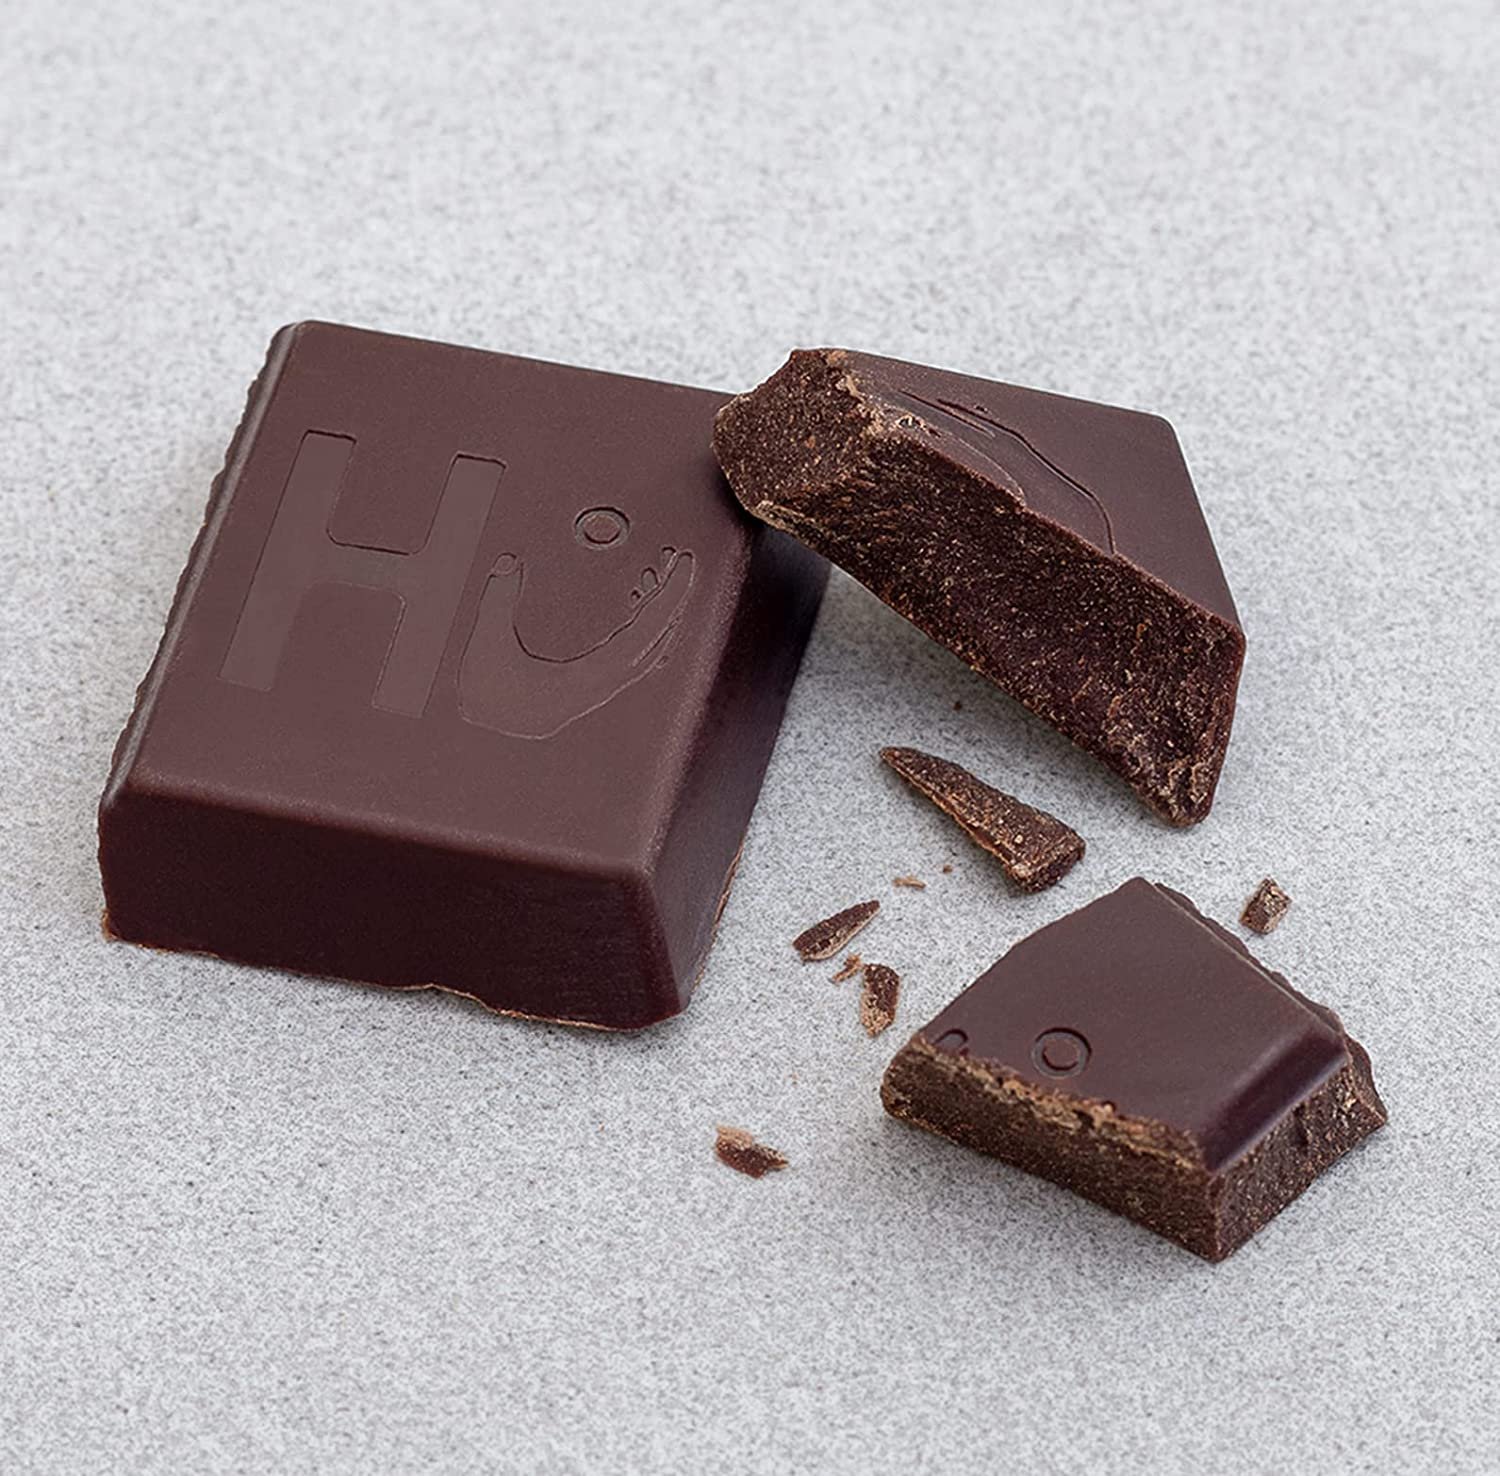 Hu Dark Chocolate Bars- Organic Vegan Chocolate, Gluten Free, Paleo, Dark Chocolate